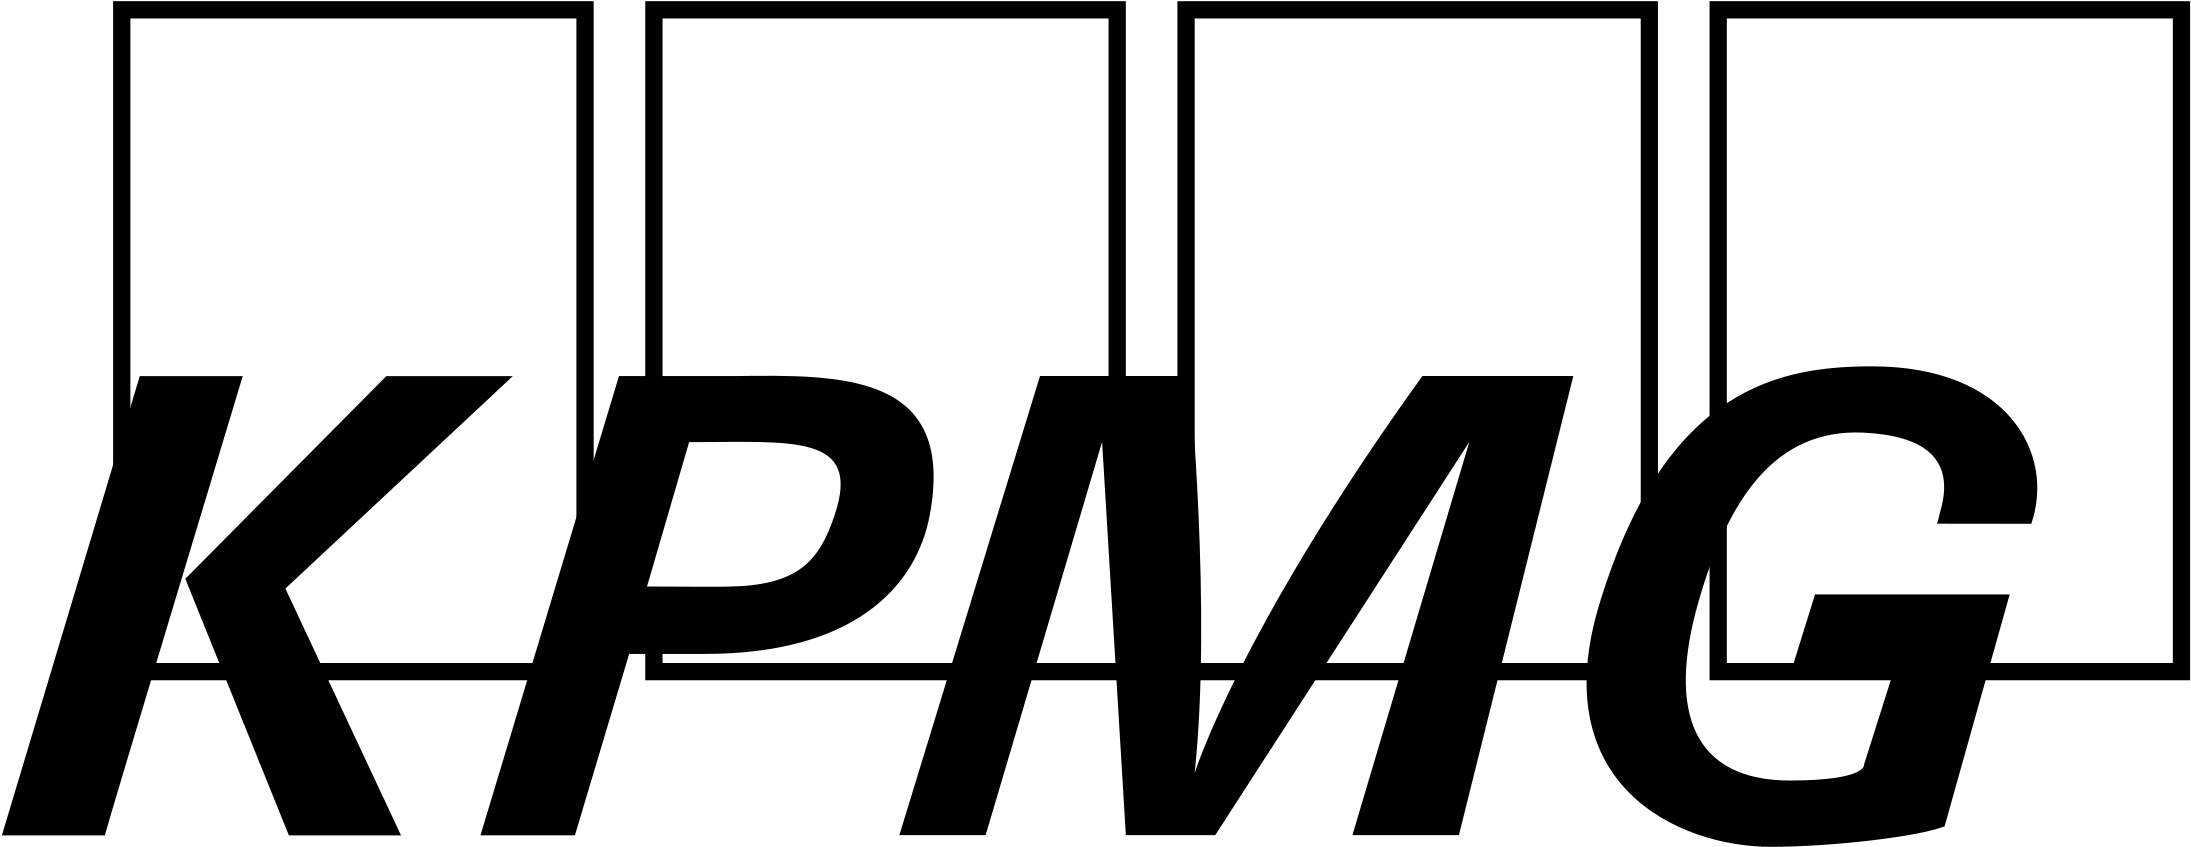 177-1773069_kpmg-logo-png-transparent-kpmg-black-png